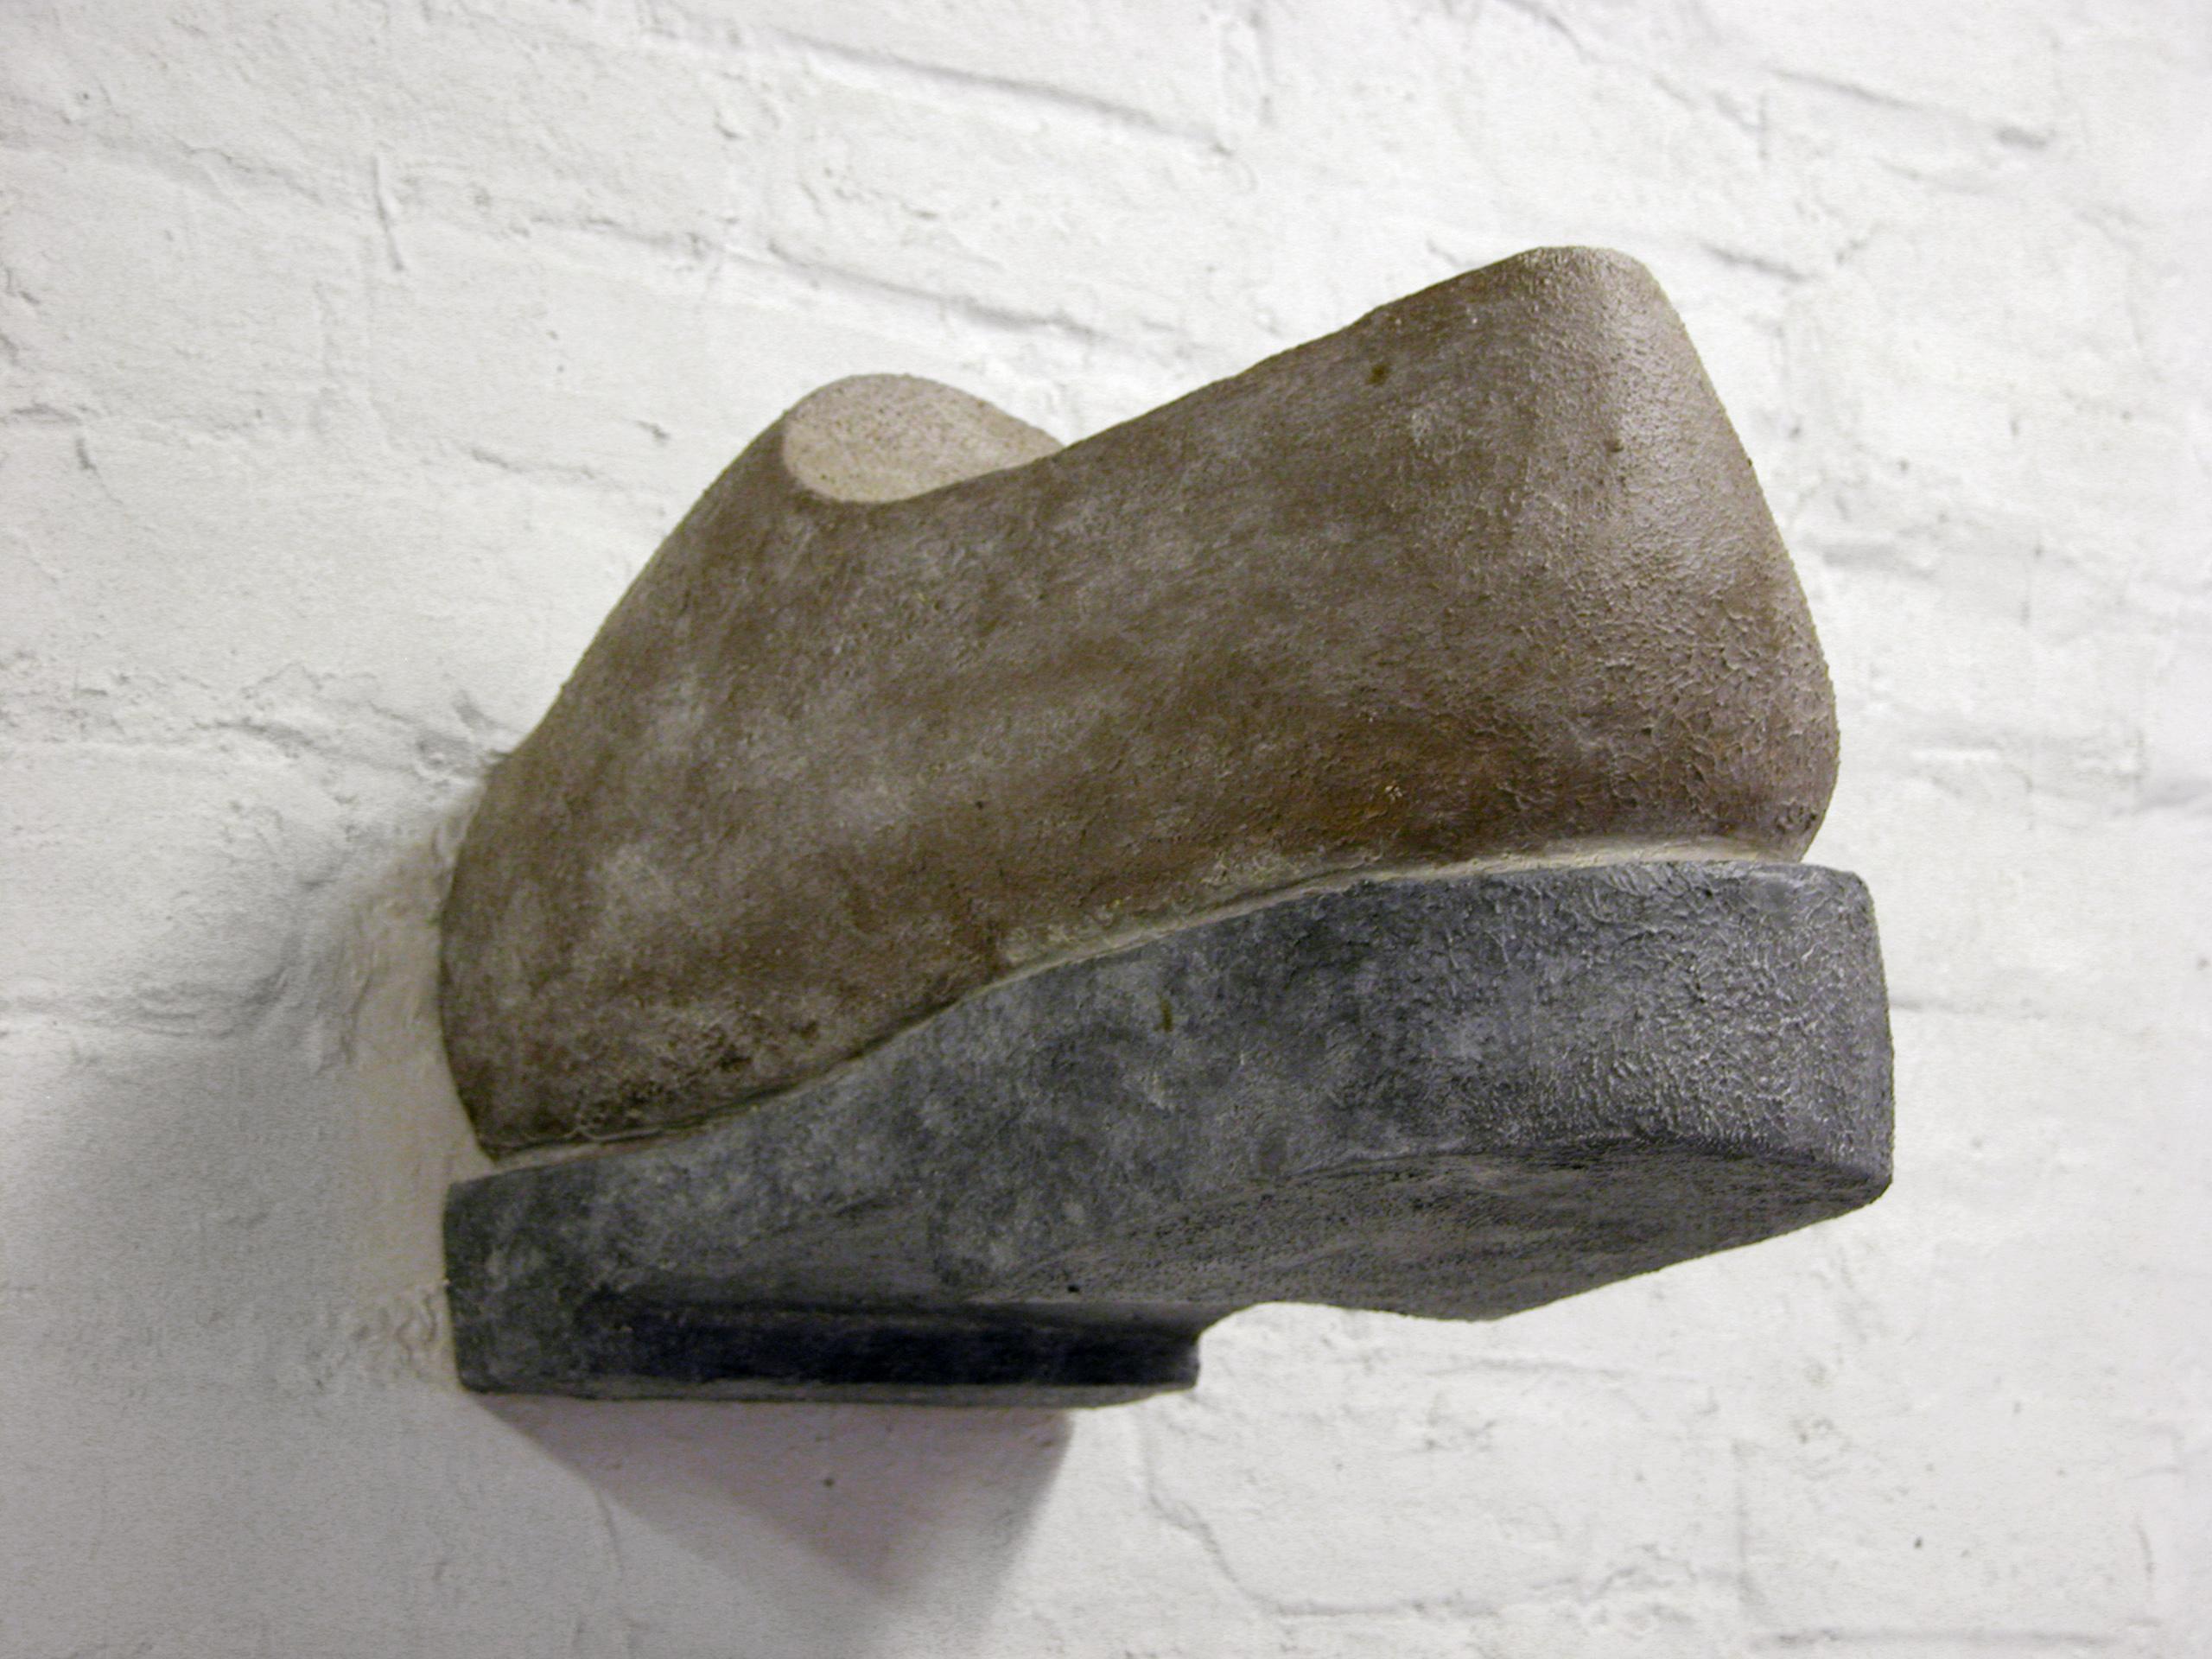 Hans Van Meeuwen Abstract Sculpture - Shoe